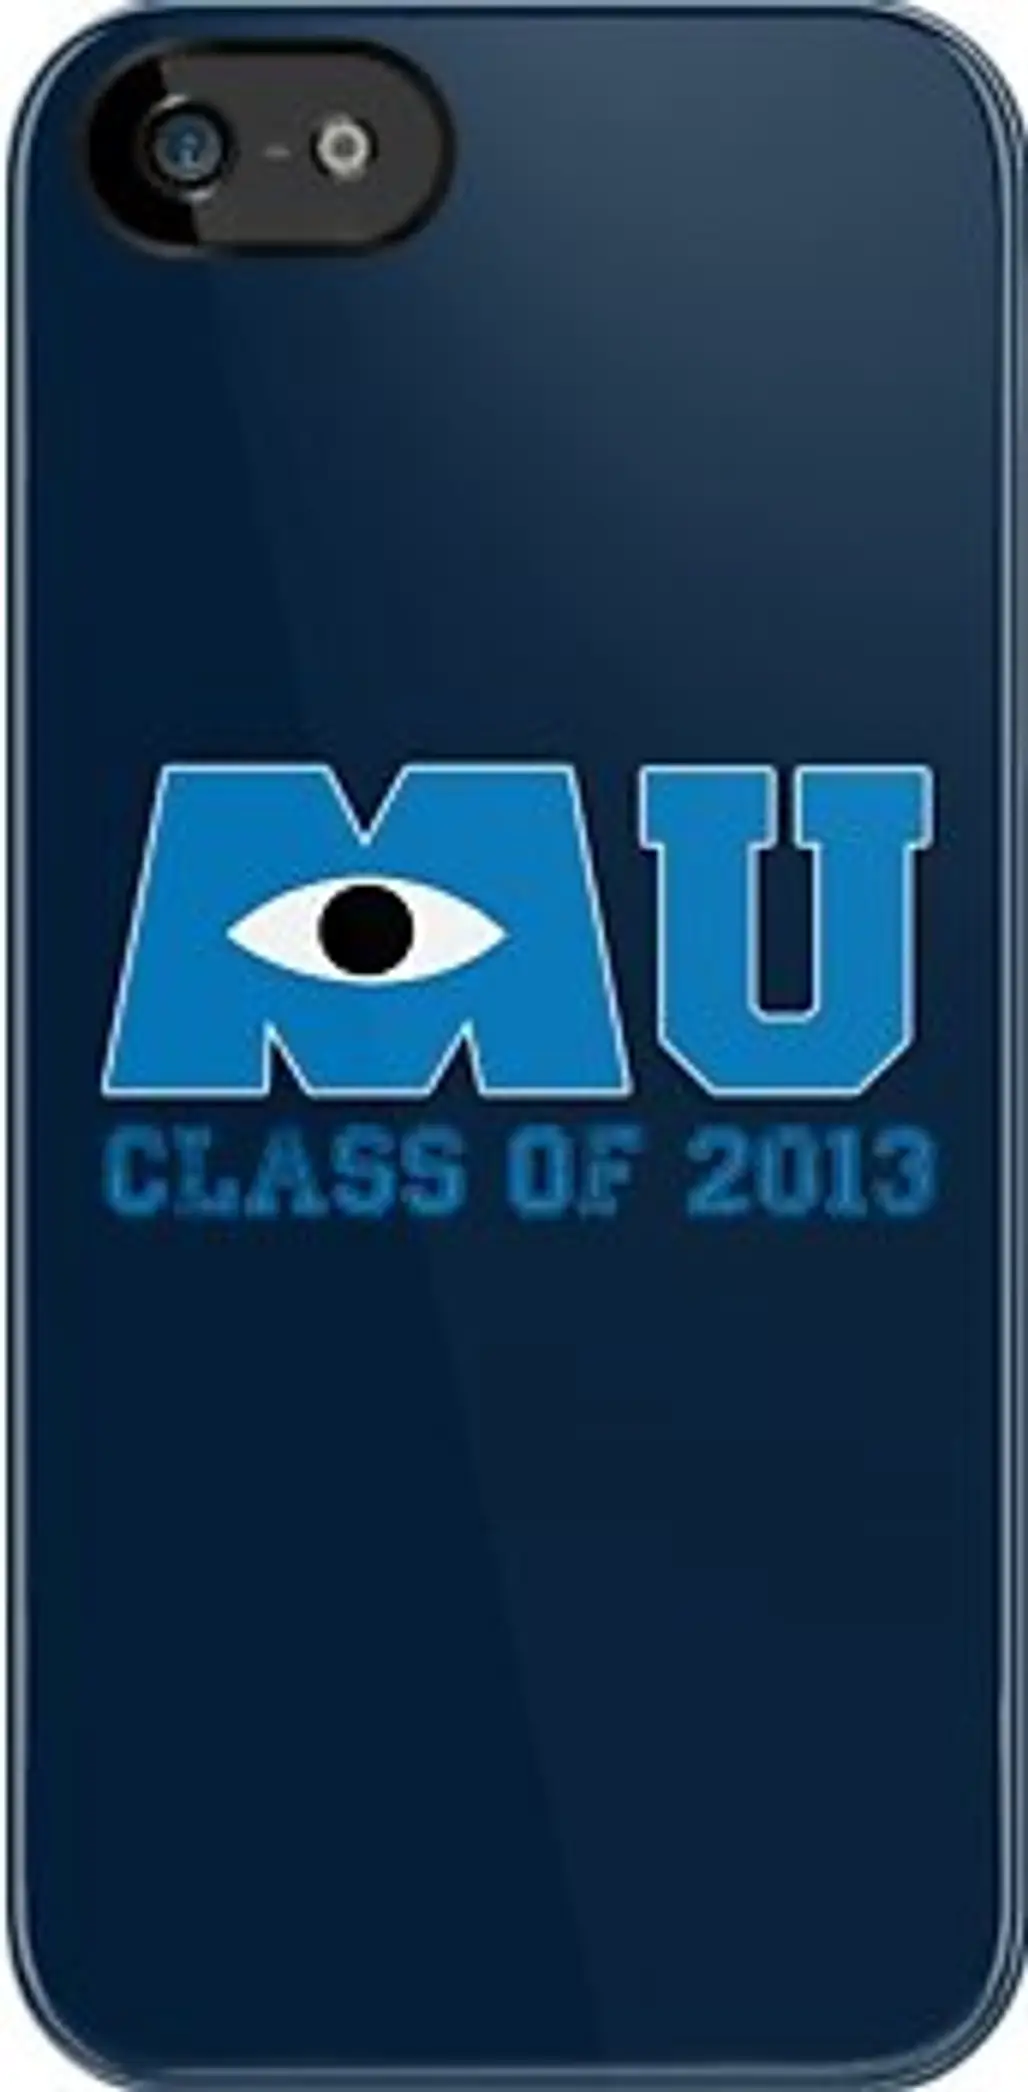 MU Class of 2013